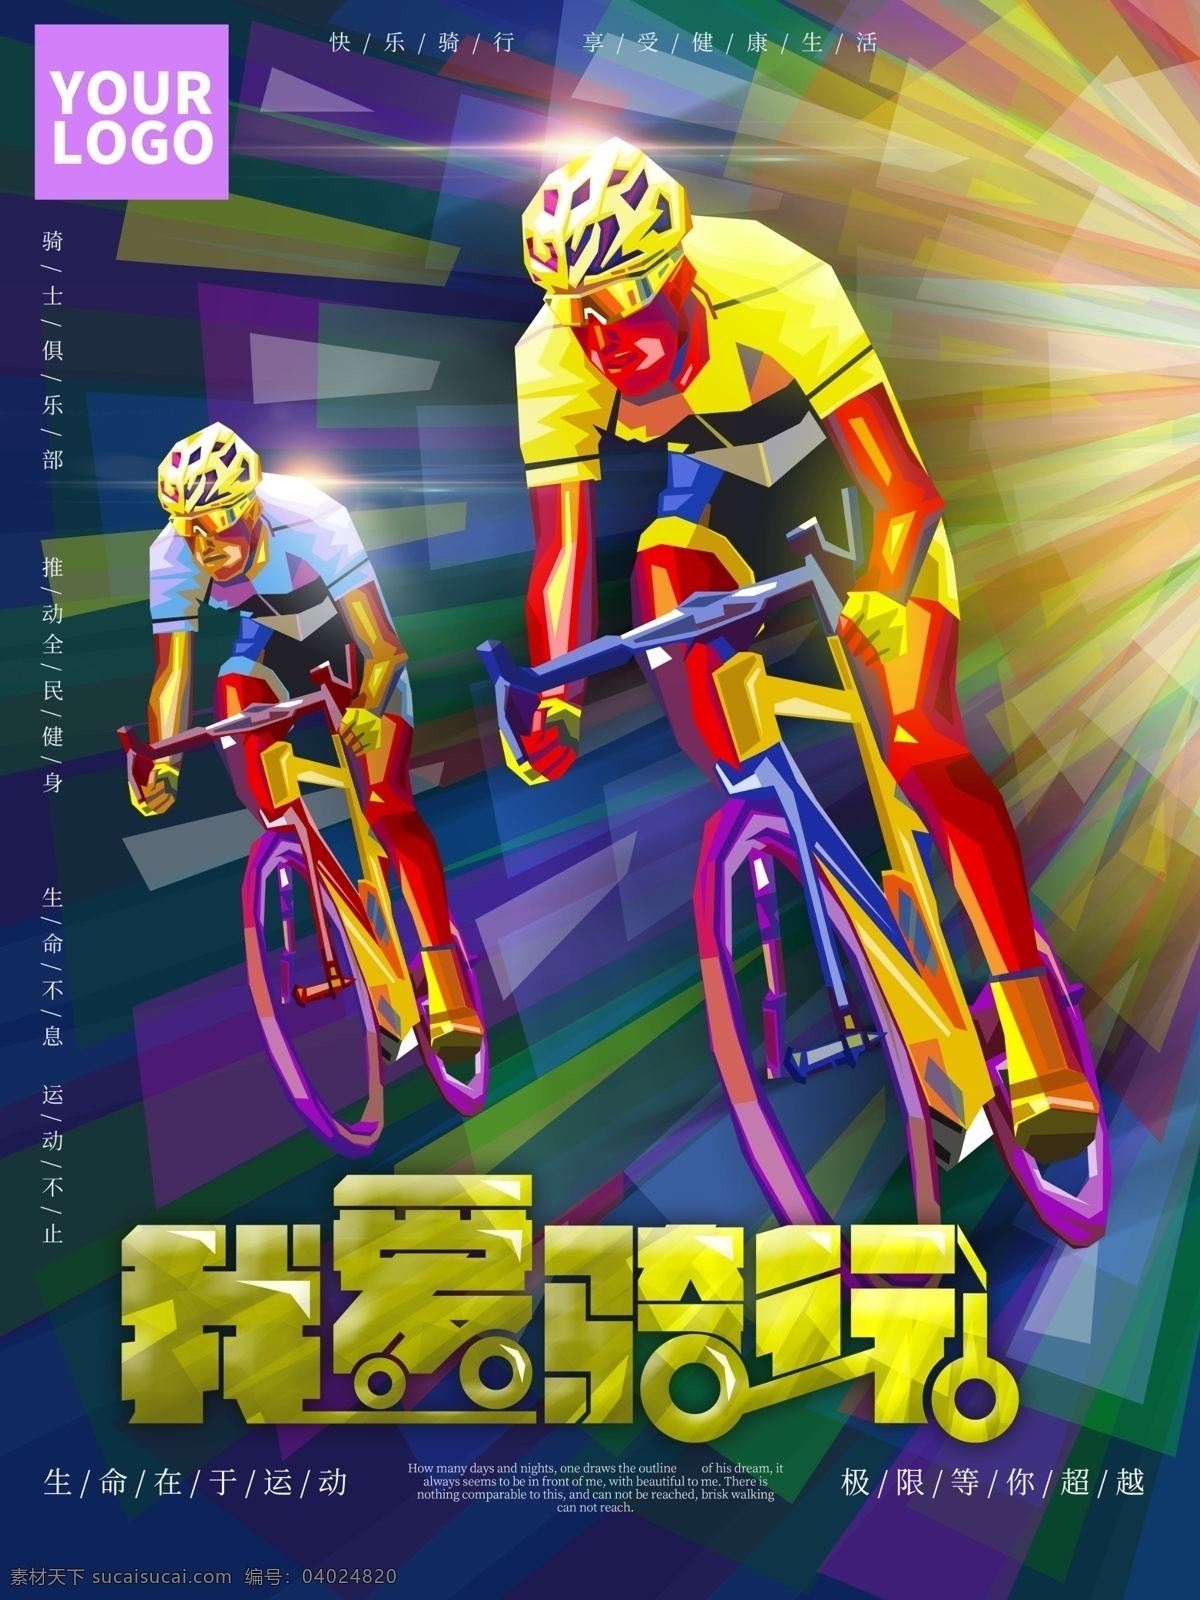 我爱 骑 行 全民健身 海报 骑行 自行车 生命不息 极限等你超越 运动不止 骑自行车 健身海报 骑车比赛 锻炼身体 我爱骑行 娱乐 体育健身 健身强体 生命在于运动